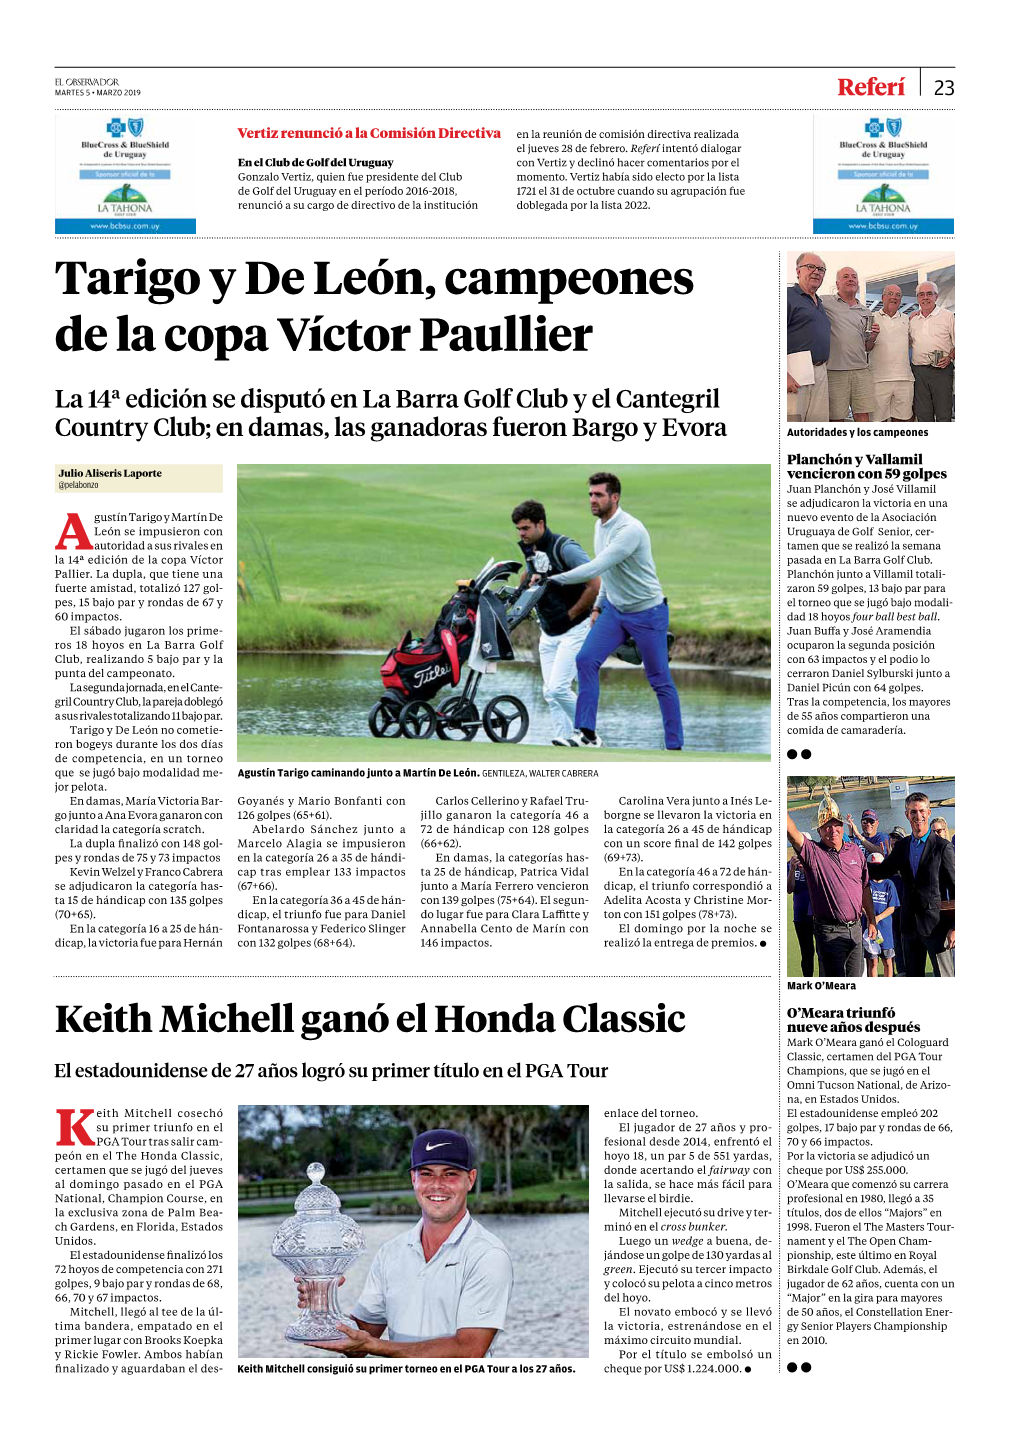 Tarigo Y De León, Campeones De La Copa Víctor Paullier